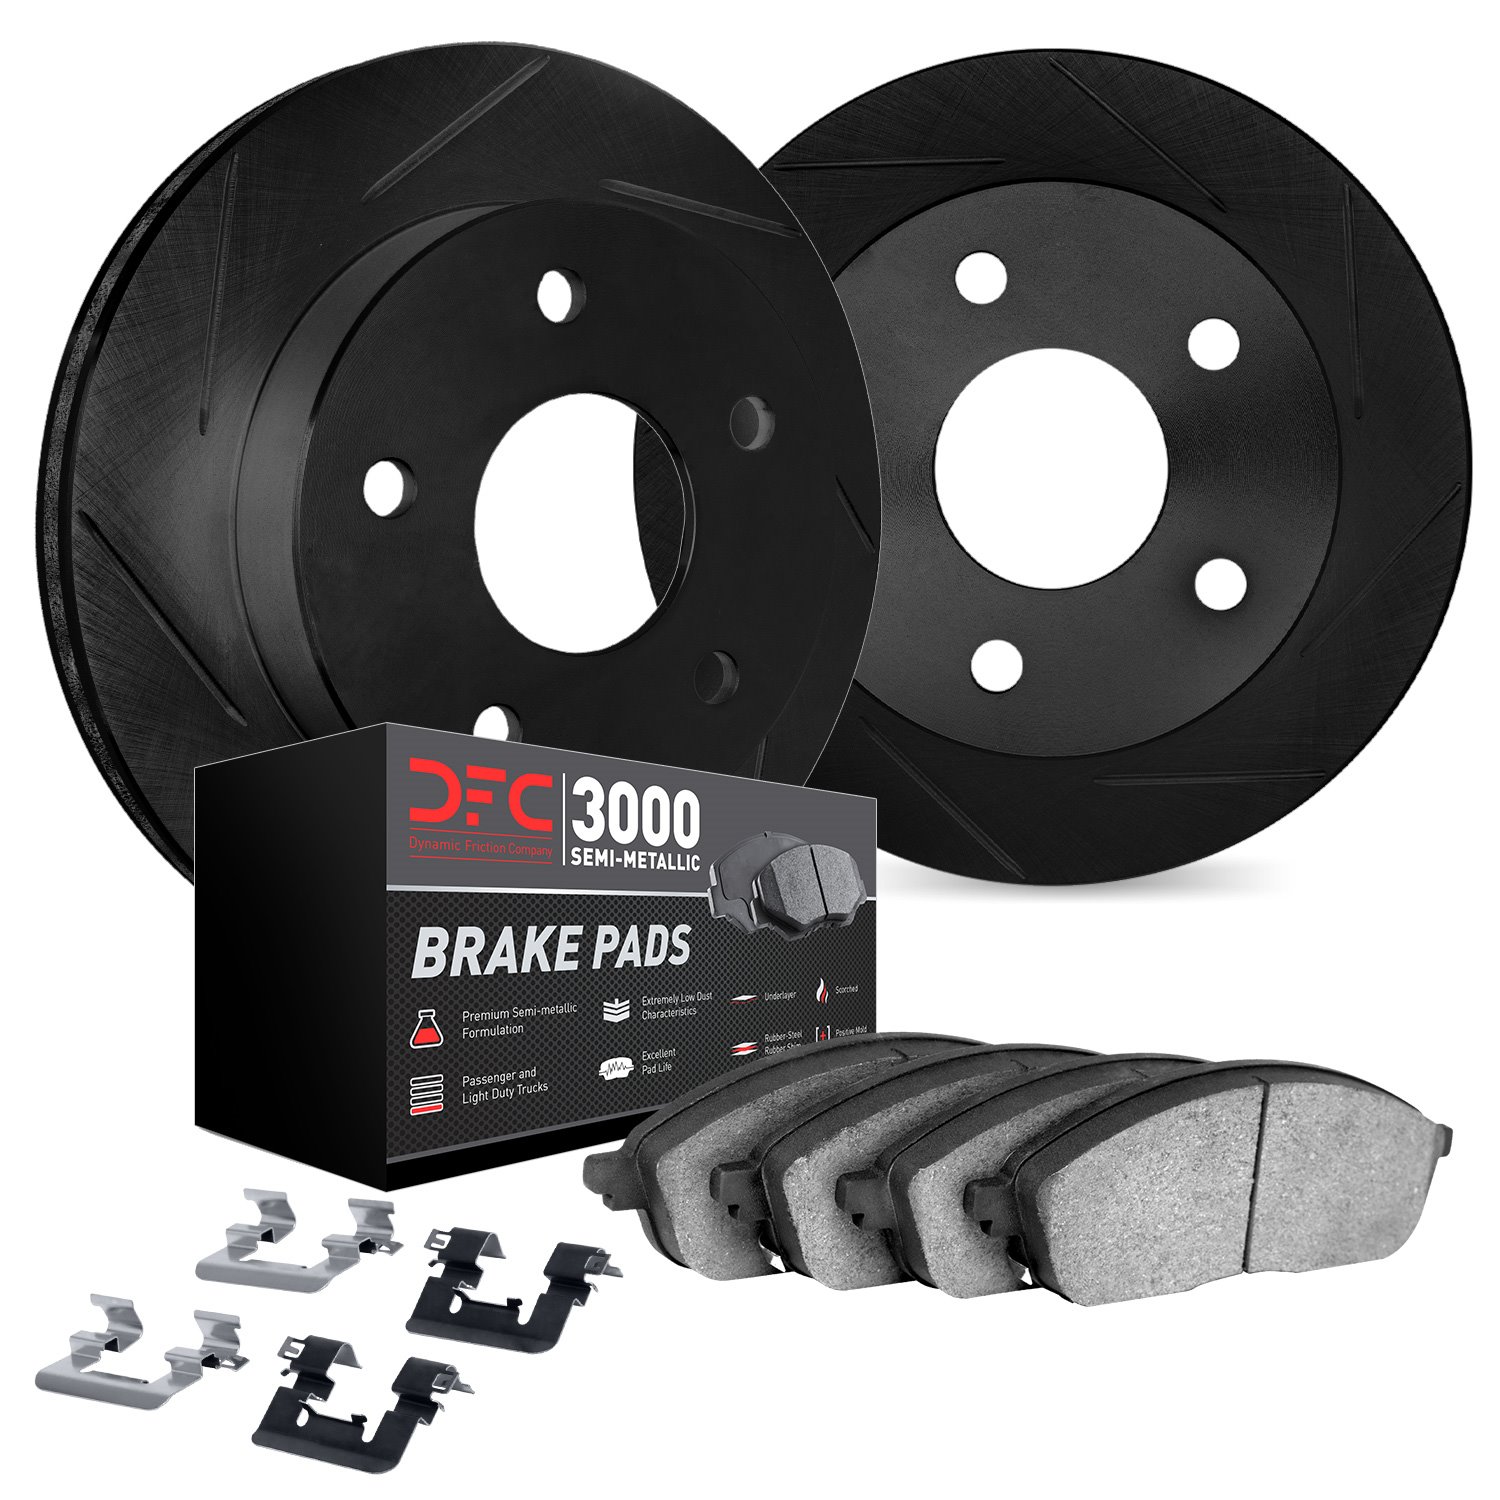 3112-63147 Slotted Brake Rotors with 3000-Series Semi-Metallic Brake Pads Kit & Hardware [Black], 2013-2019 Mercedes-Benz, Posit